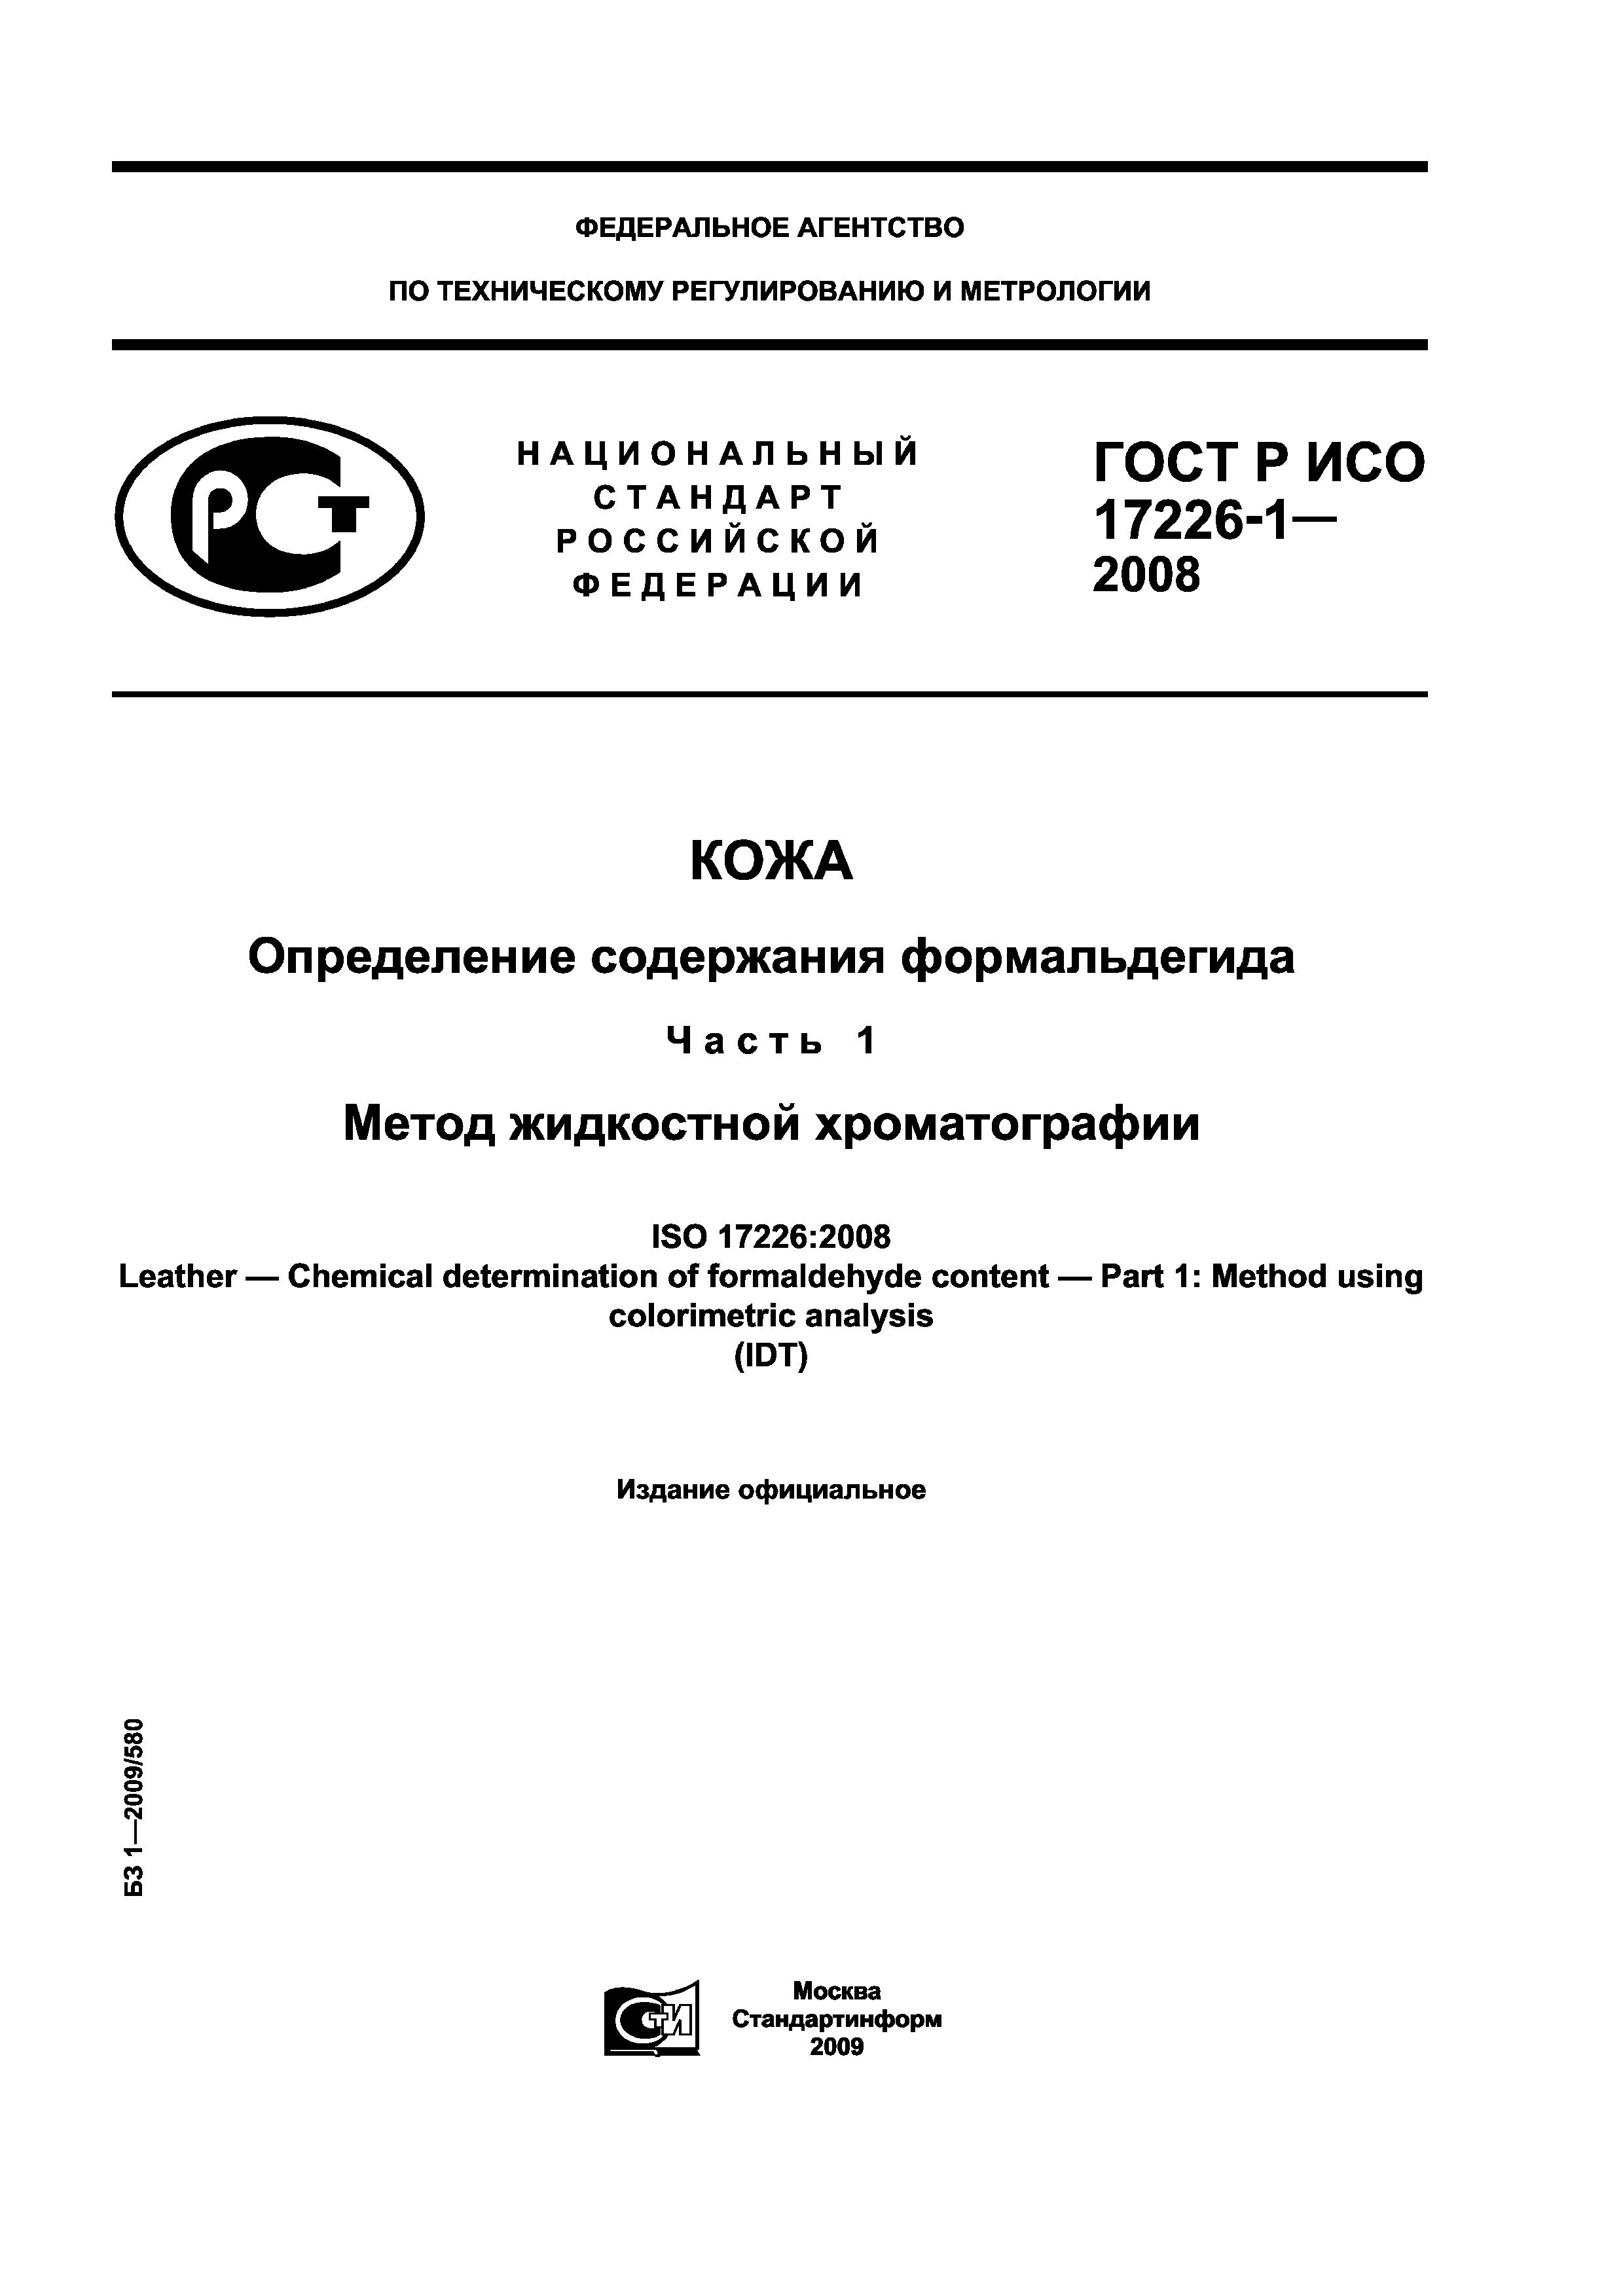 ГОСТ Р ИСО 17226-1-2008